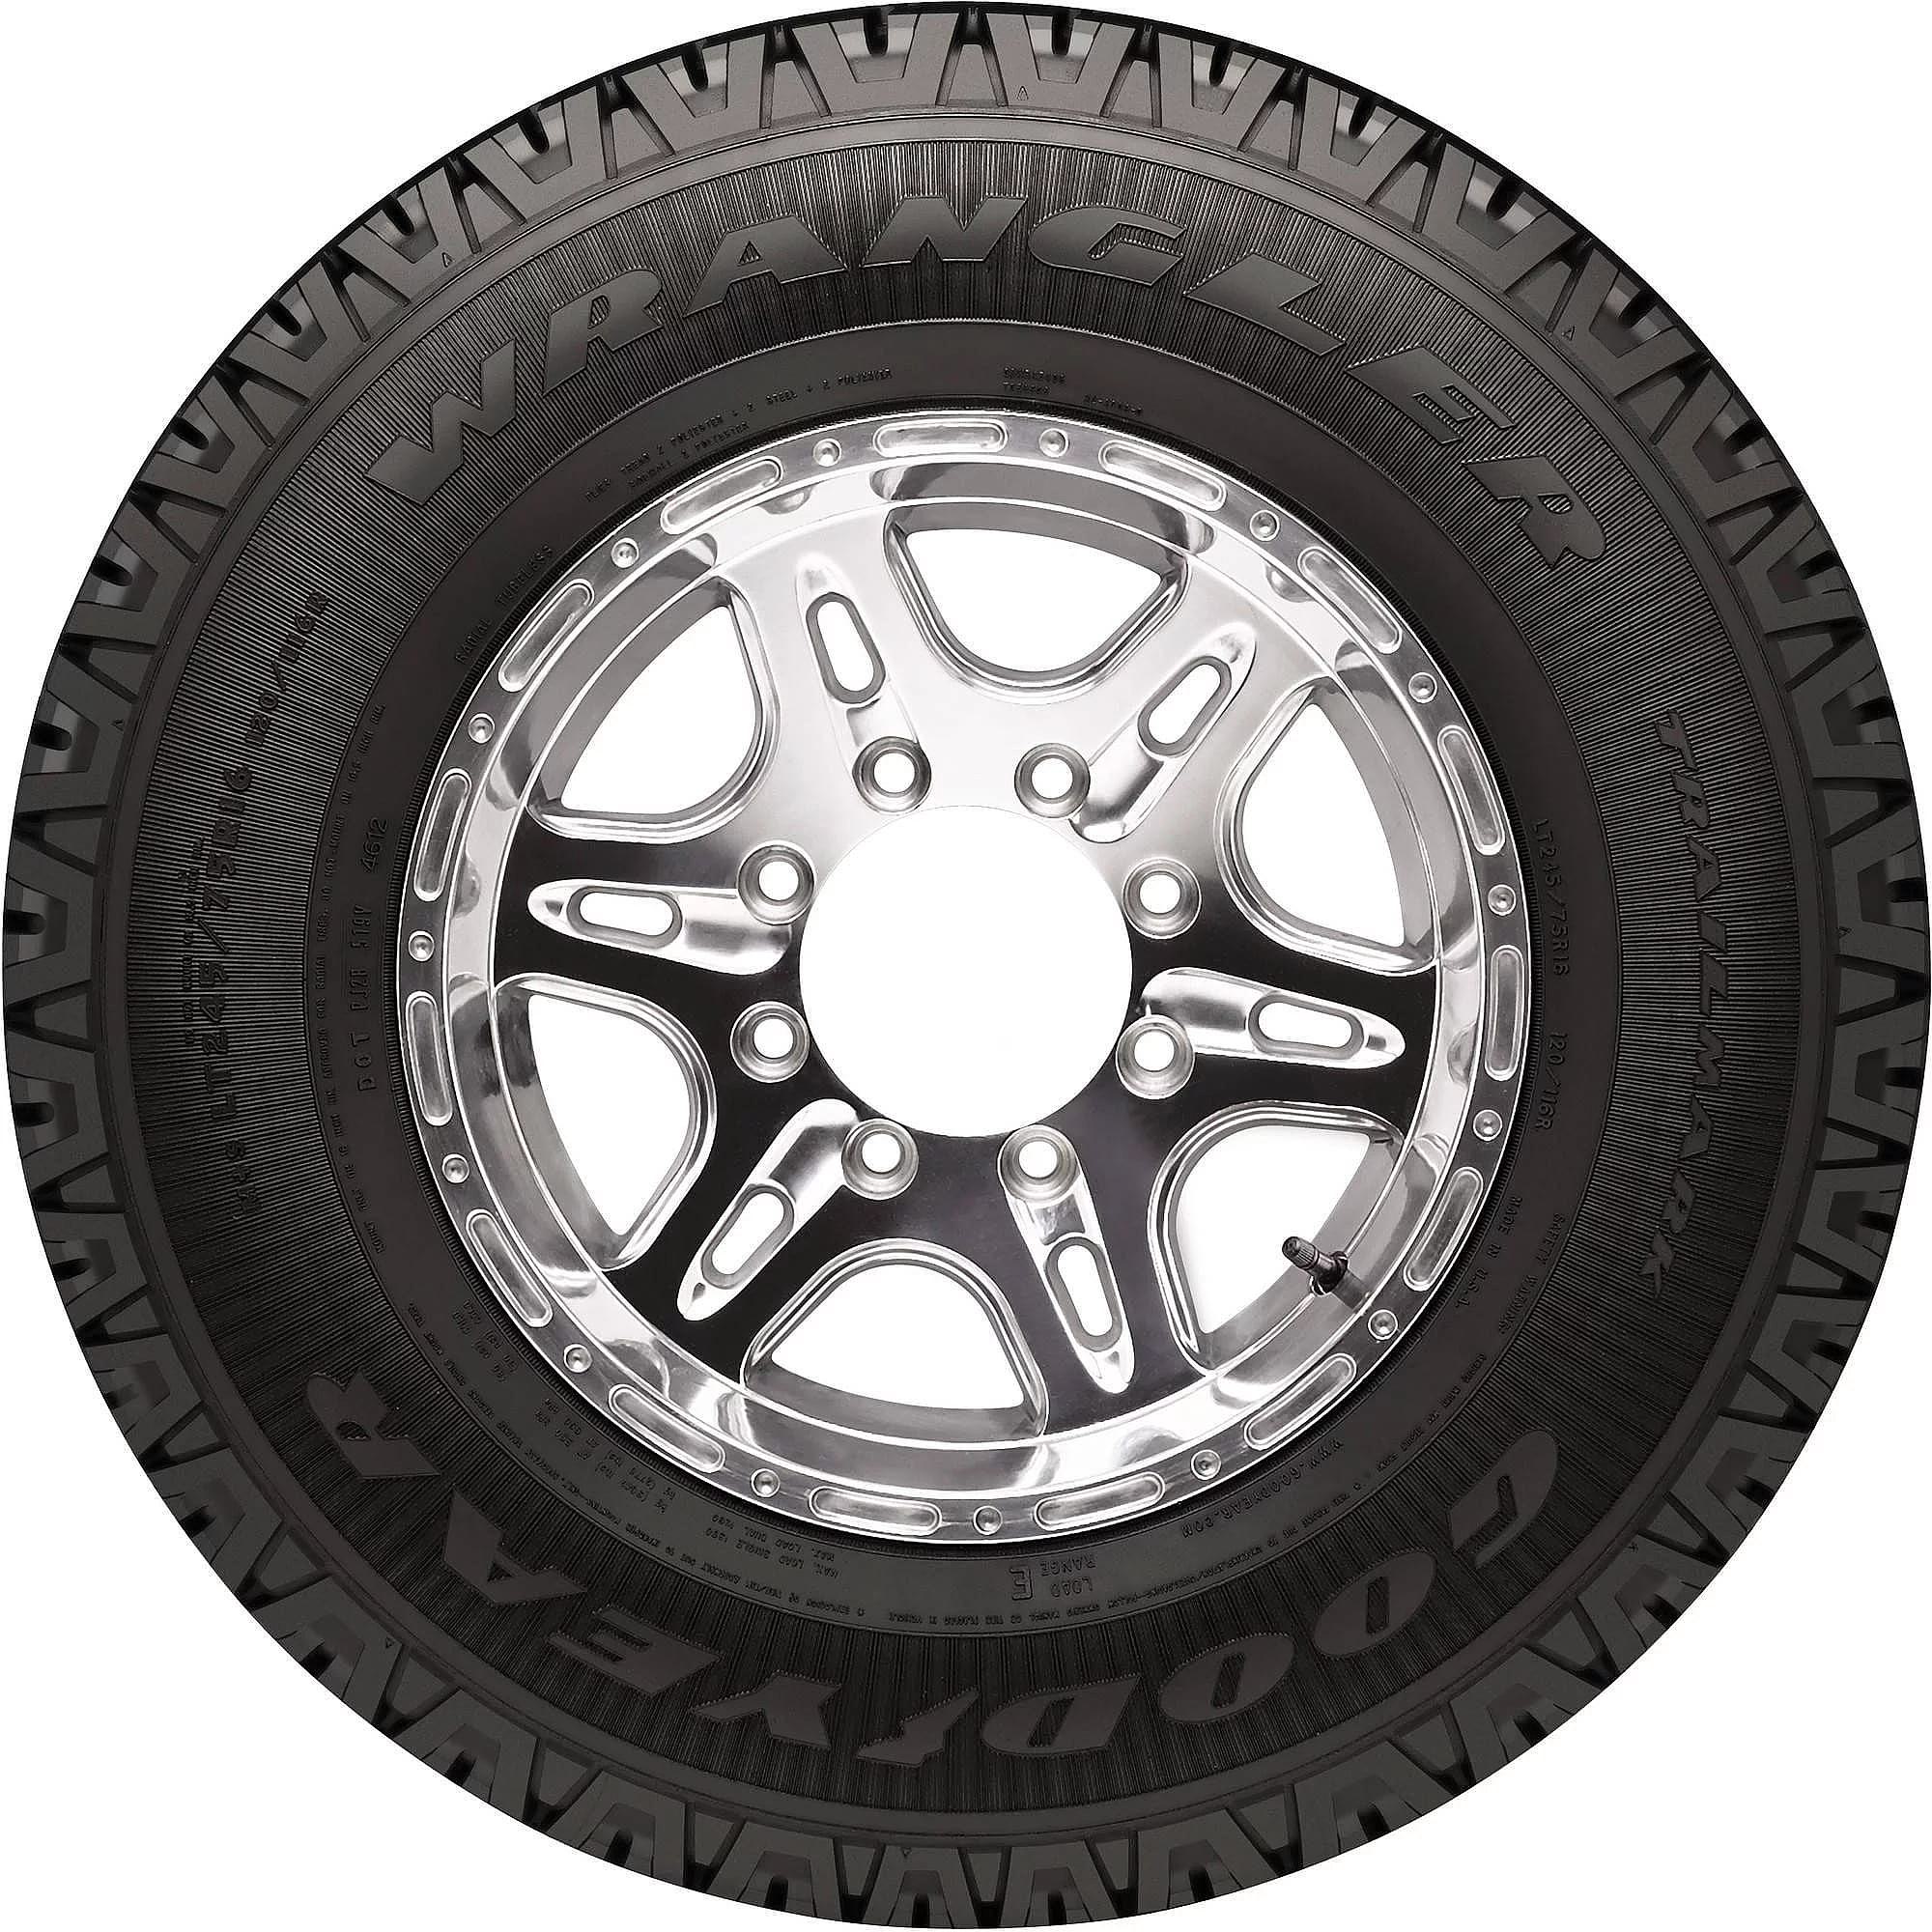 Goodyear Wrangler Trailmark All Season 235/70R16 104T Light Truck Tire - image 2 of 4